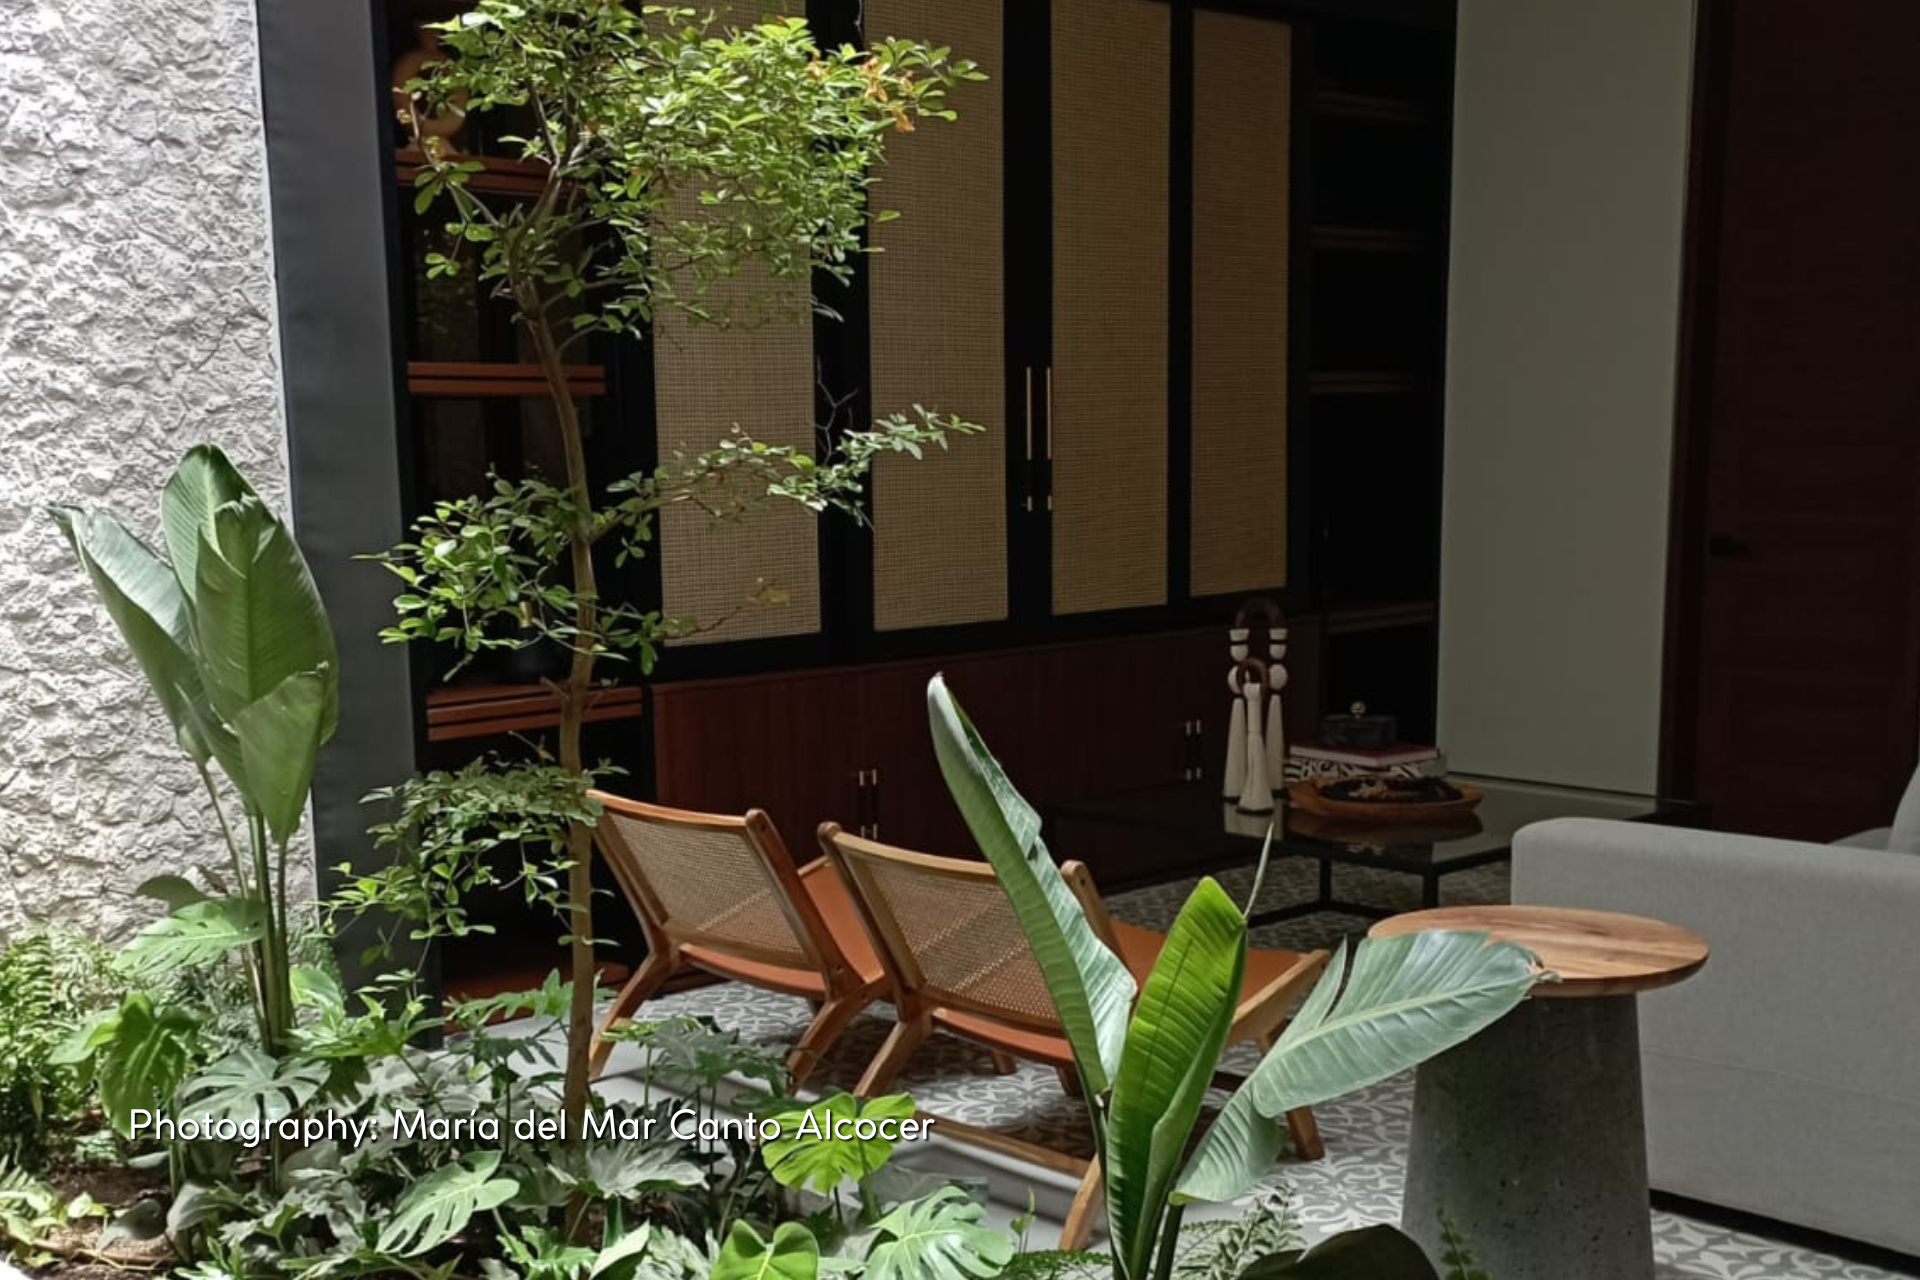 Incorporating vegetation in interior spaces